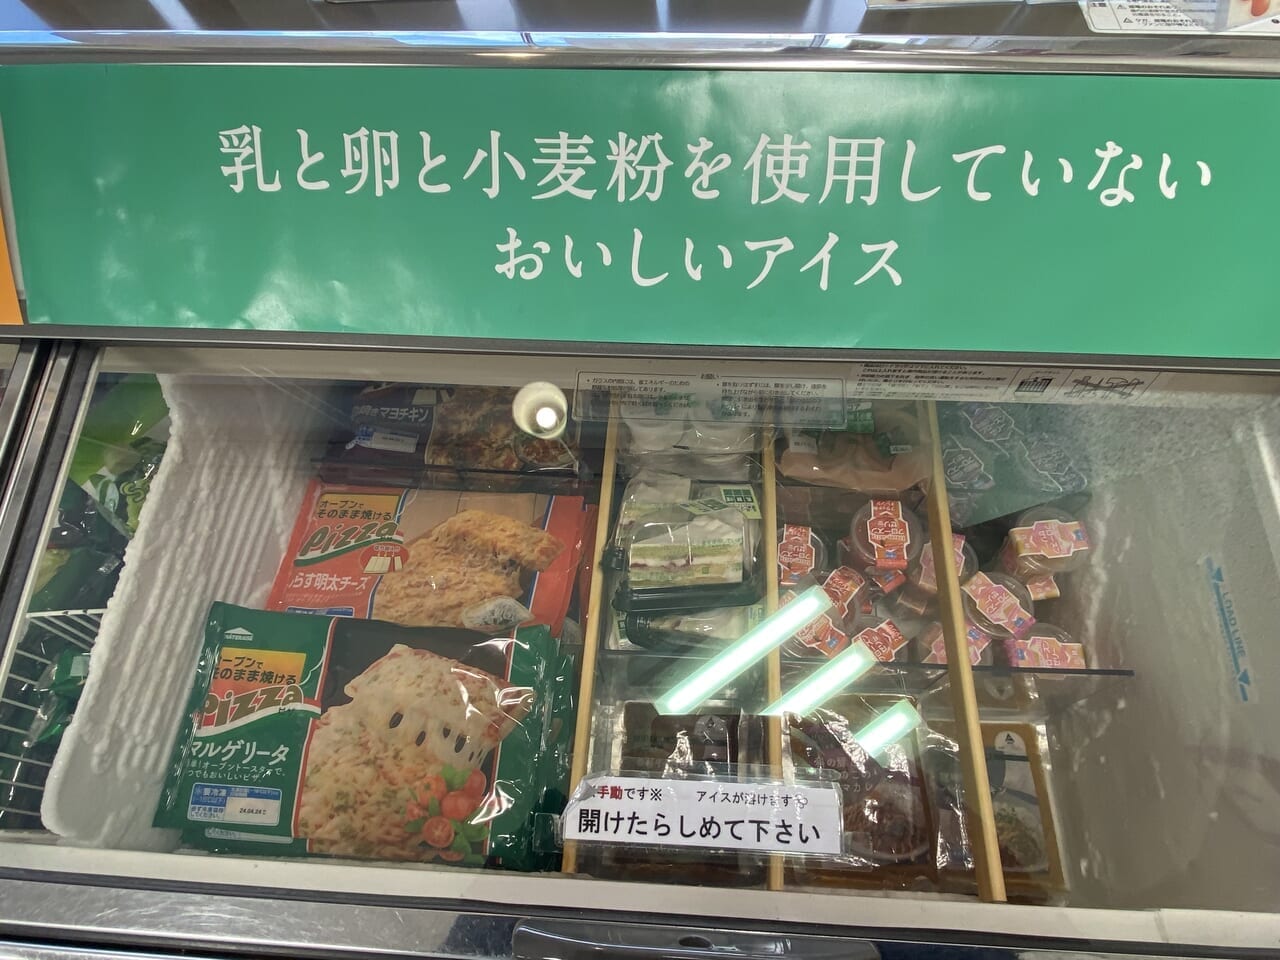 シャトレーゼ今川店ピザ